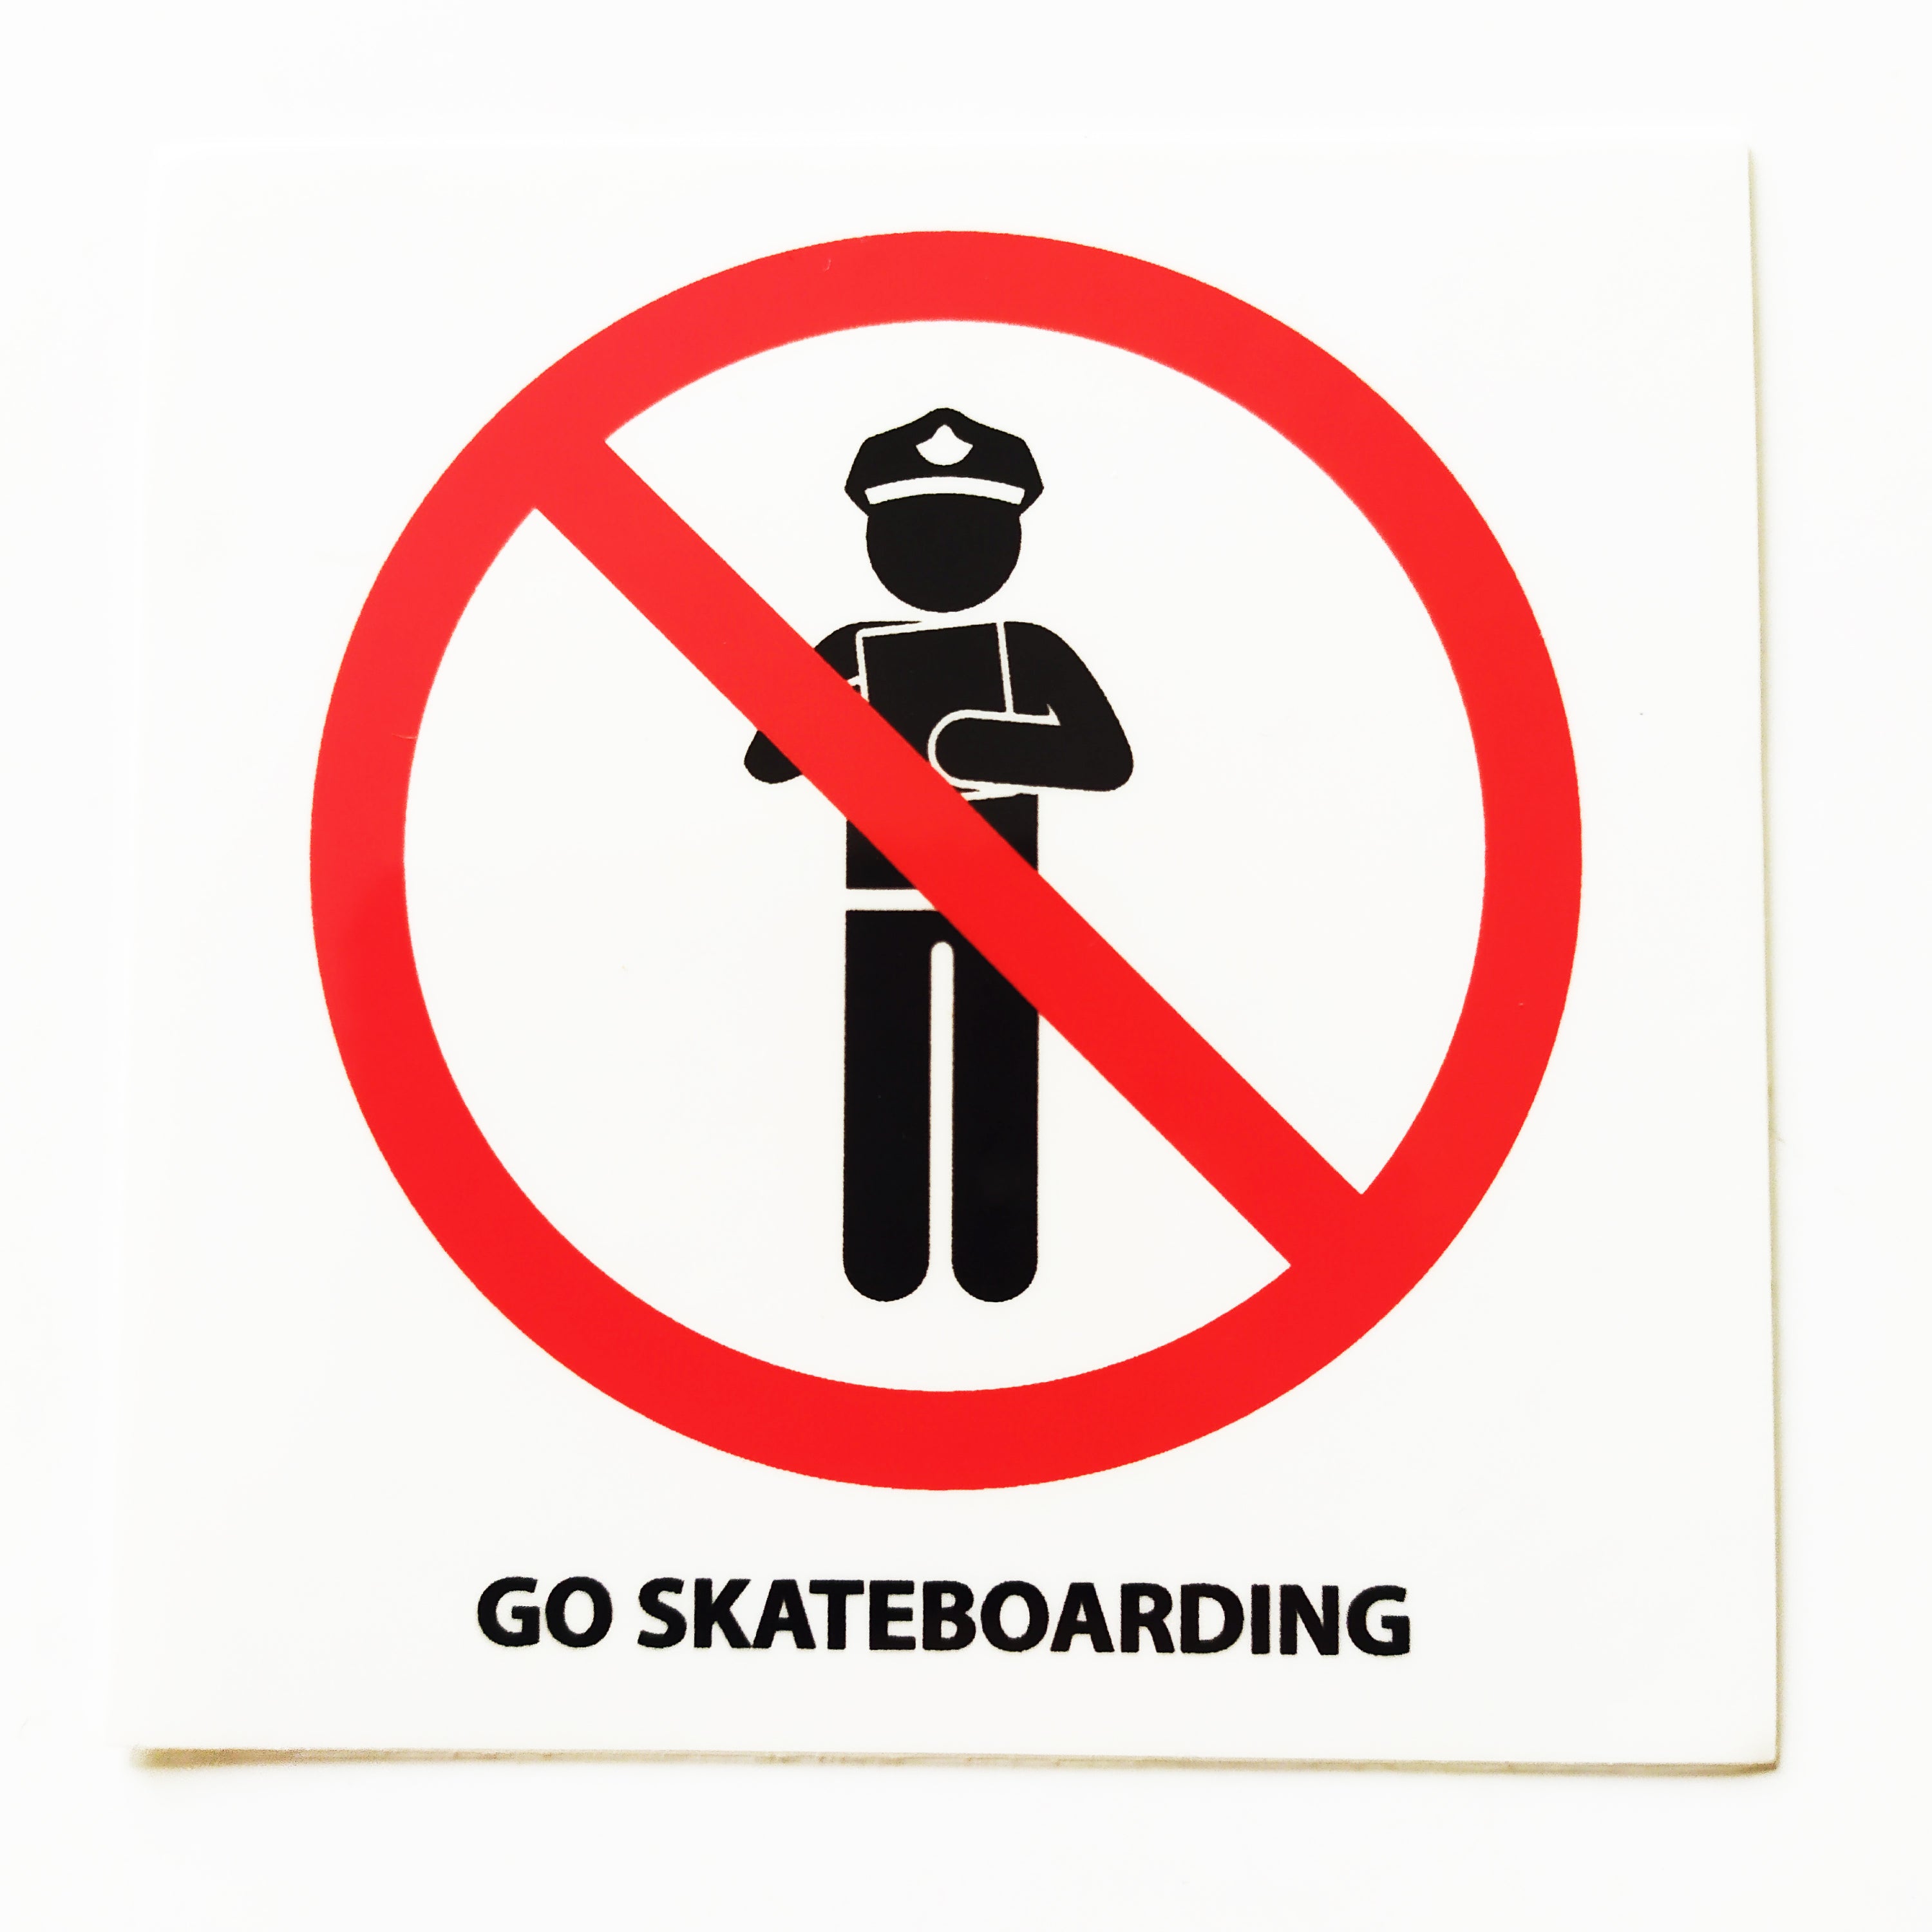 GO SKATEBOARDING Skateboard Sticker from Thank You Skateboards - 7.5cm across approx - SkateboardStickers.com